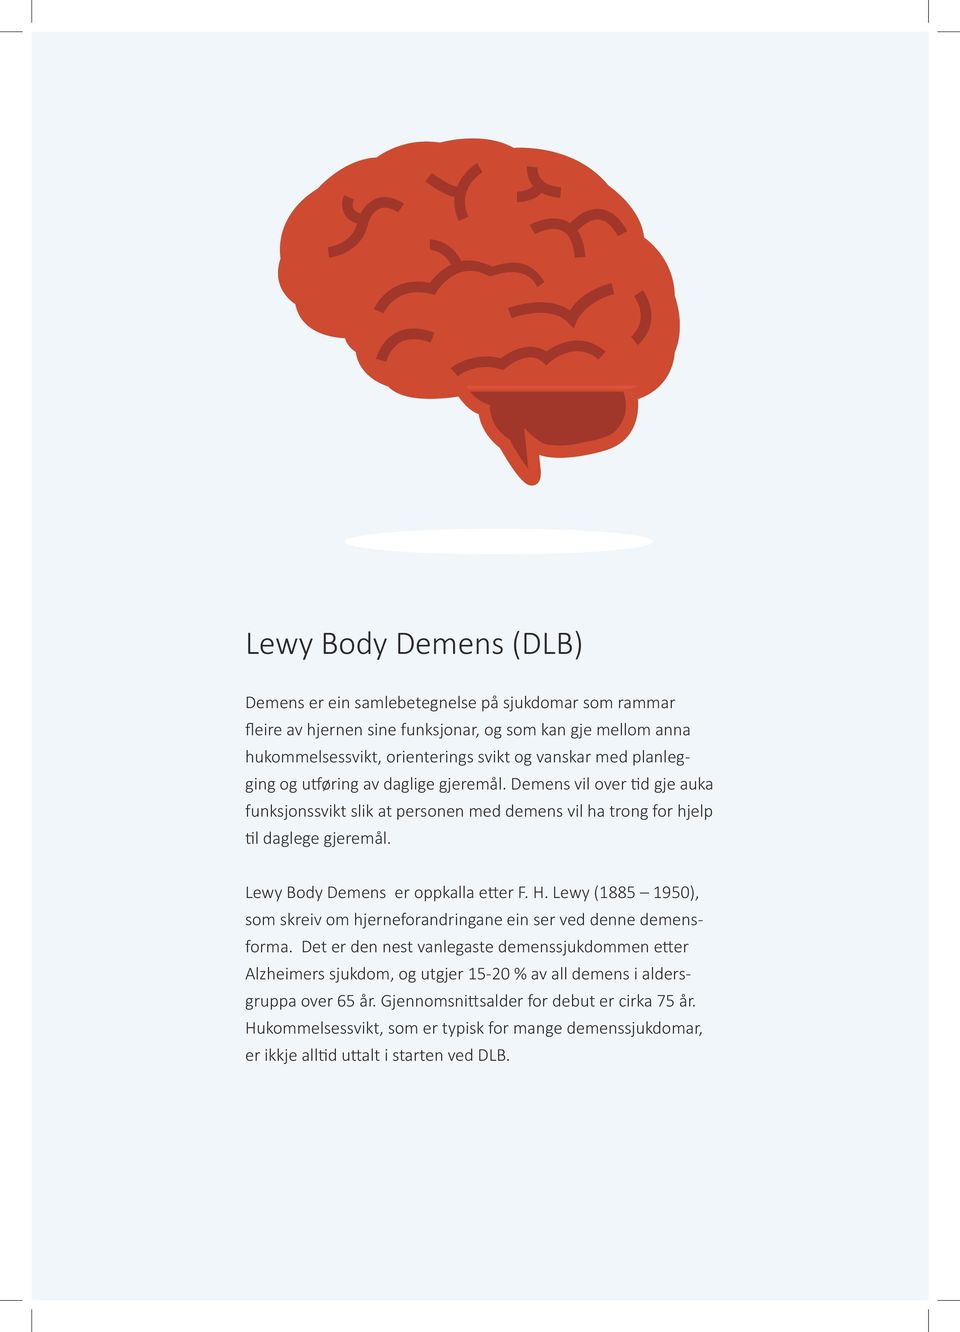 Lewy Body Demens er oppkalla etter F. H. Lewy (1885 1950), som skreiv om hjerneforandringane ein ser ved denne demensforma.